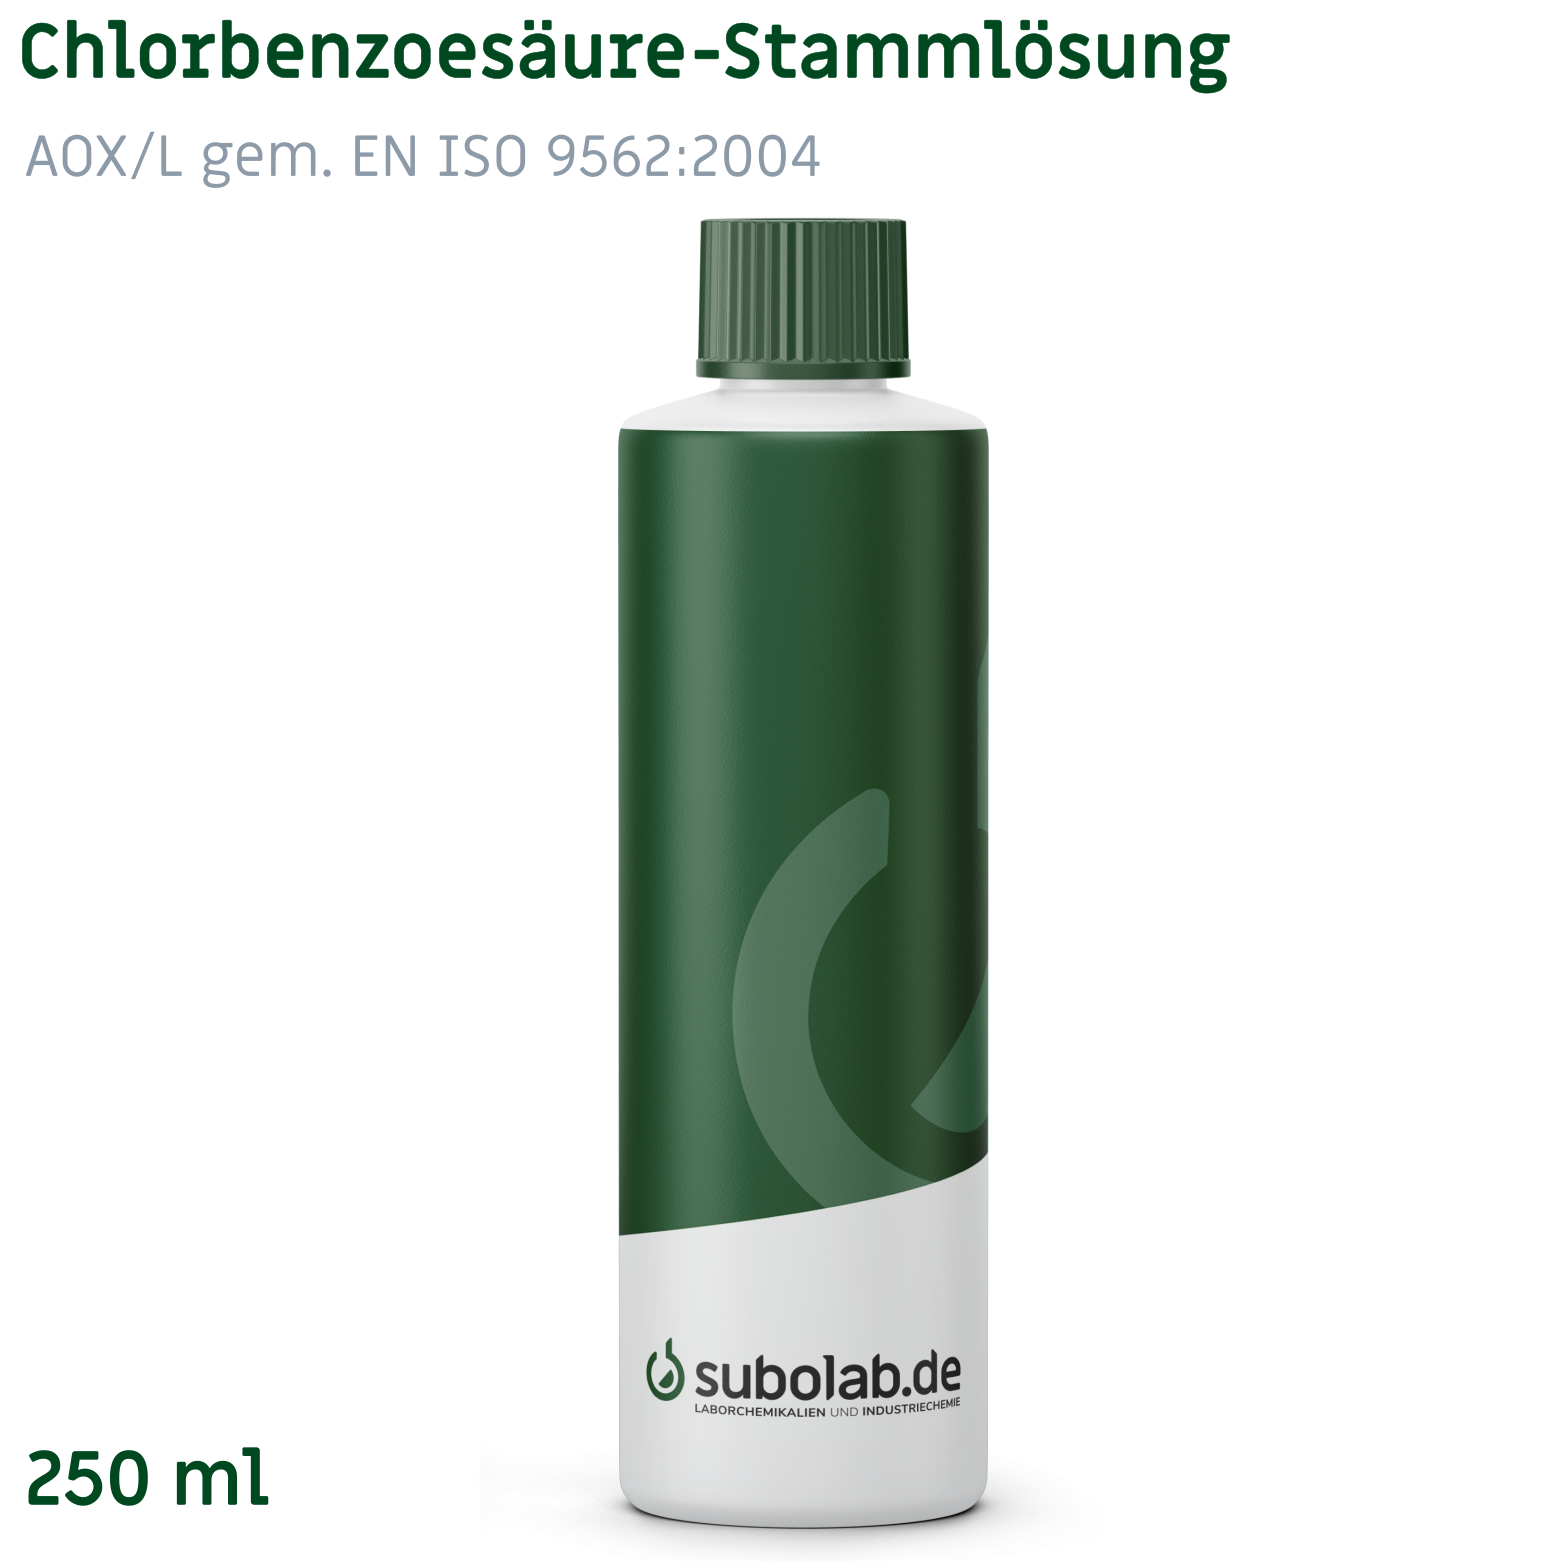 Bild von 2-Chlorbenzoesäure-Stammlösung AOX/L gem. EN ISO 9562:2004, DEV H14 (Kühl lagern!!) (250 ml)